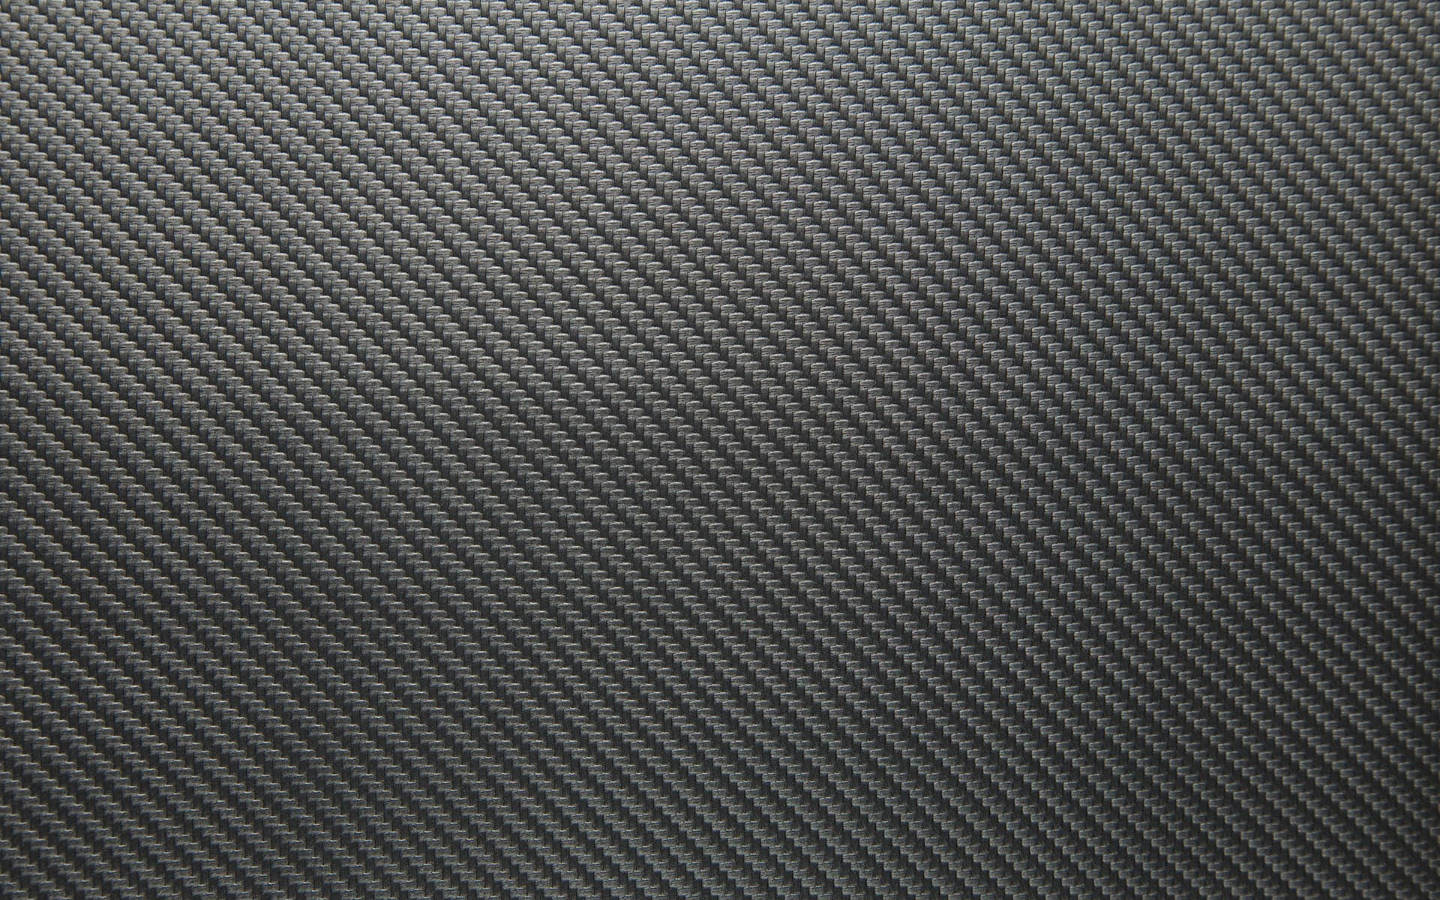 Grey Carbon Fiber 4k Background